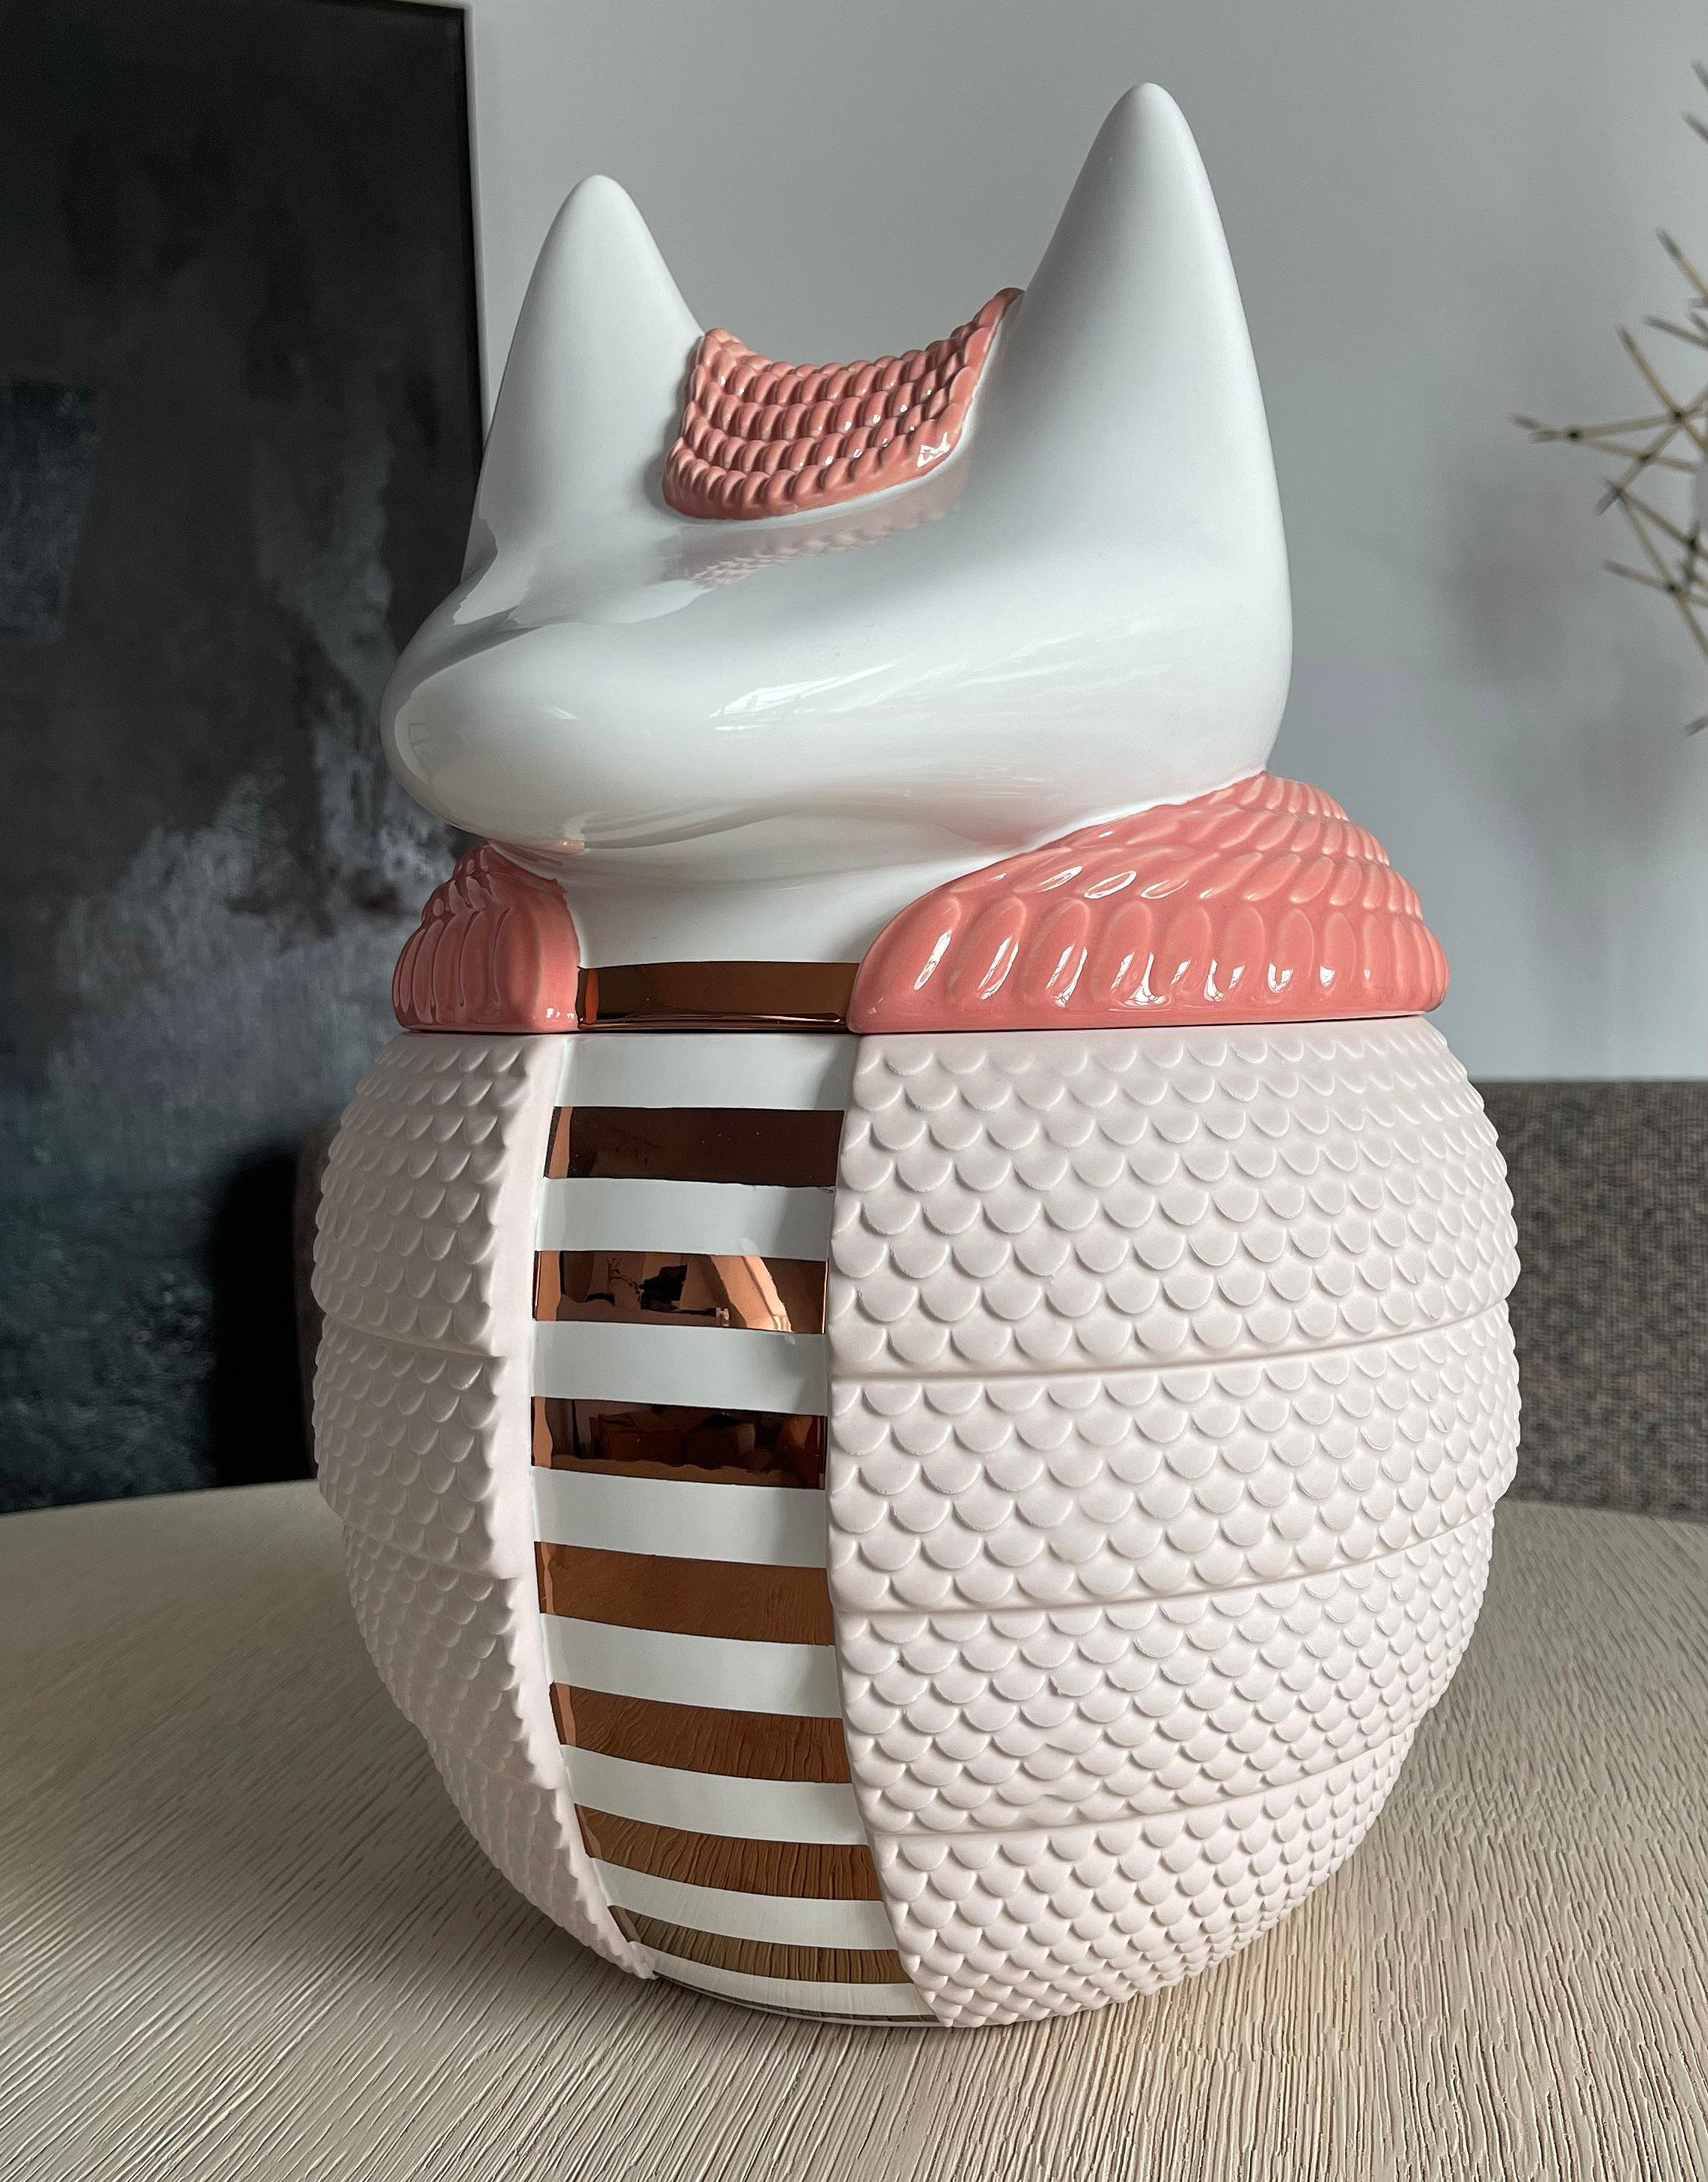 Vase / Behälter aus Keramik - Animalità Loricato von Elena Salmistraro für Bosa

Loricato, entworfen von Elena Salmistraro für Bosa, ist ein gürteltierförmiges Gefäß aus Keramik, das mit Edelmetallen angereichert ist und dessen Schale eine